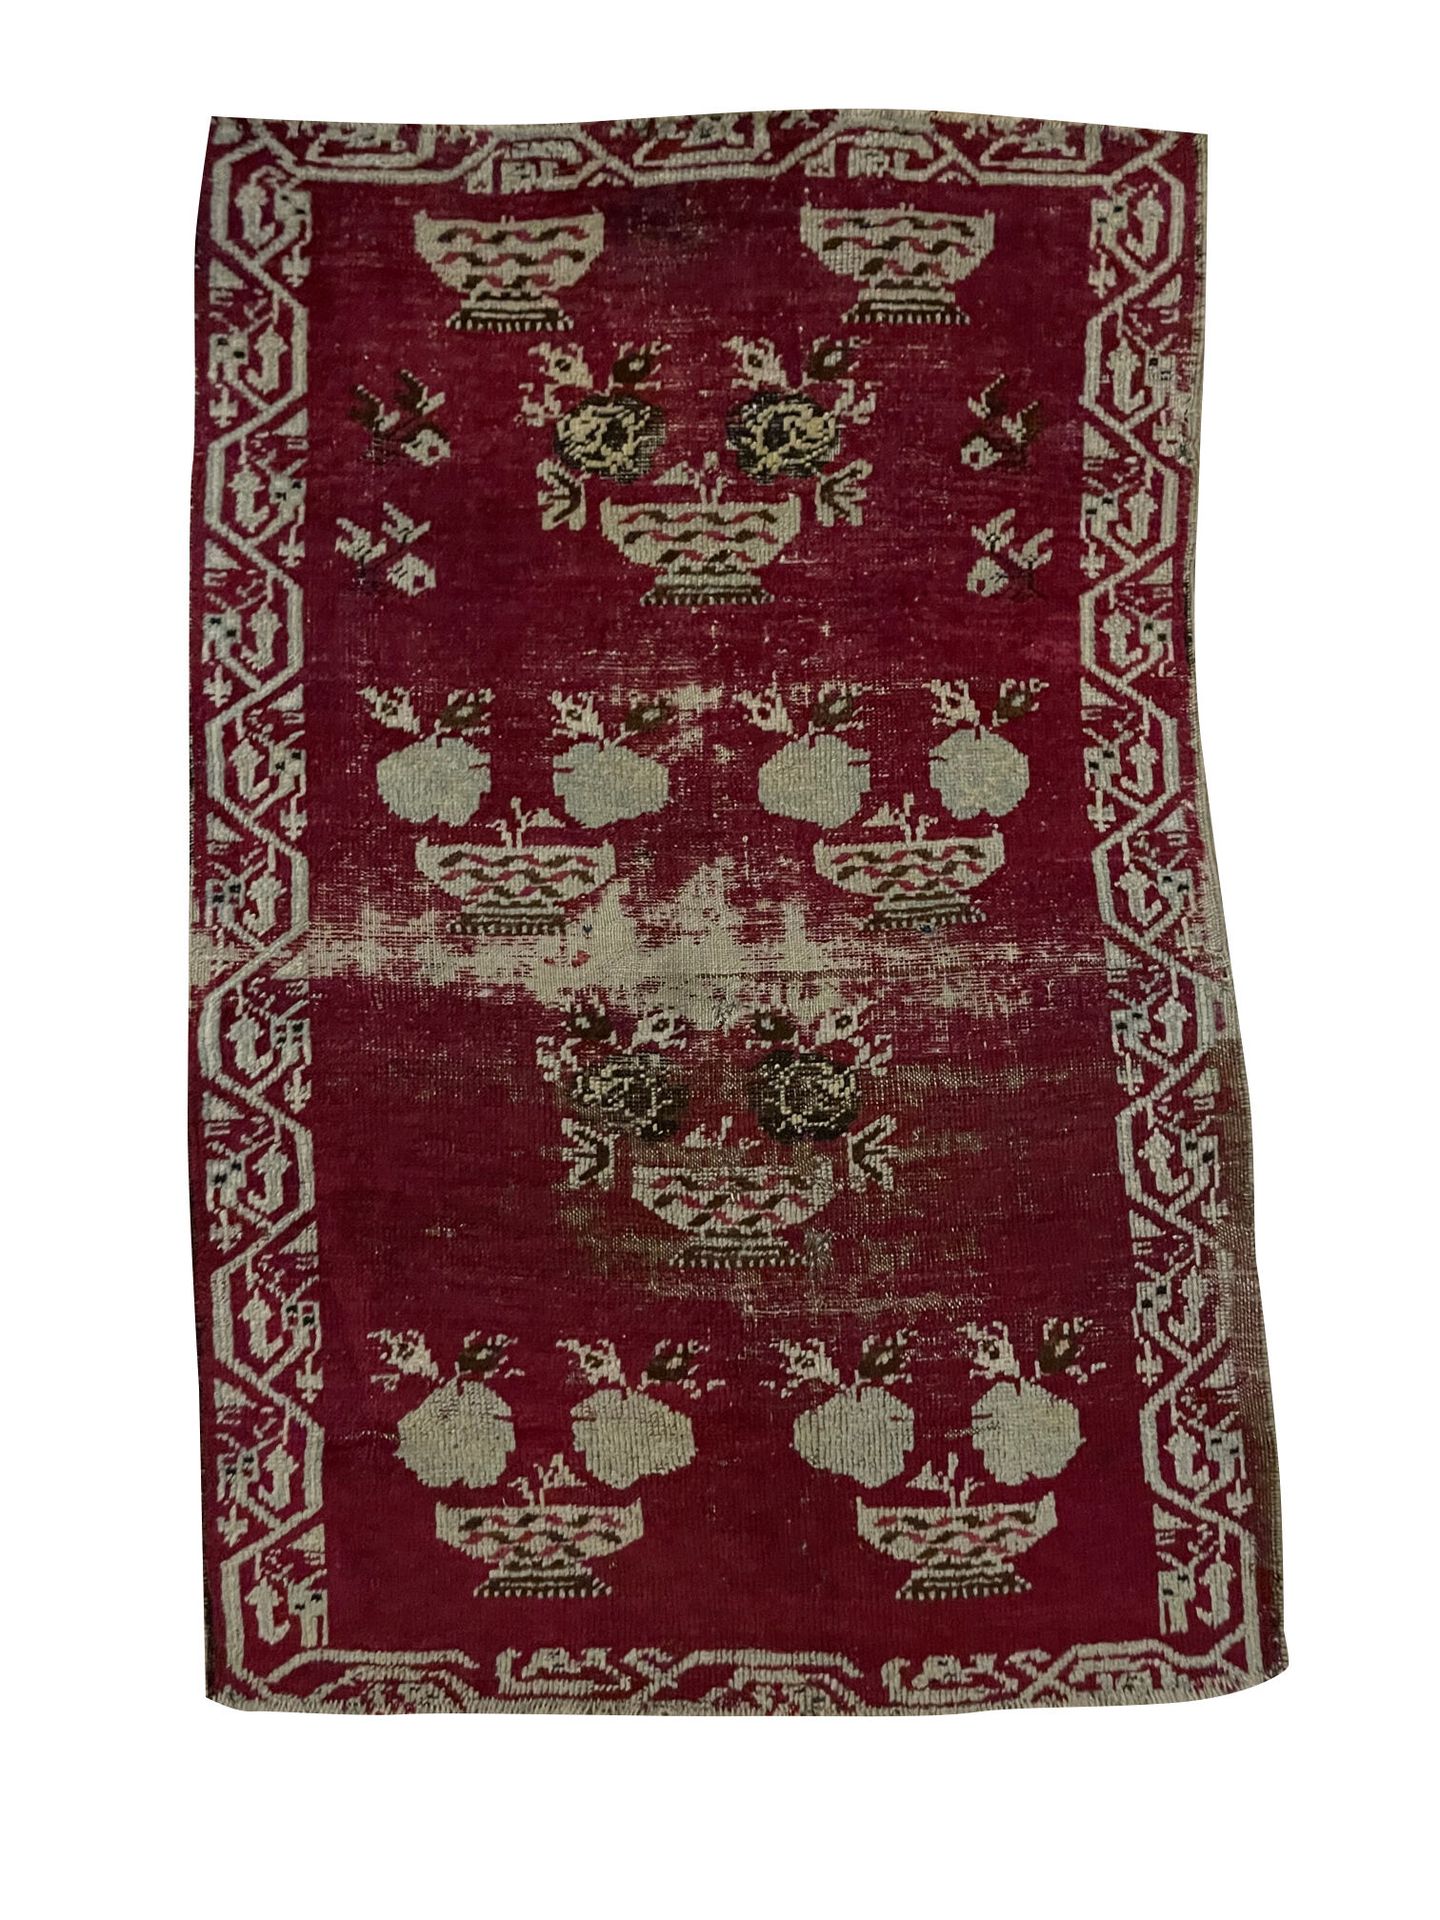 Null 东方的地毯

Ghiordes地毯，19世纪，红色和米色的色调。饰有花杯，边框上有风格化的几何图案。

穿着 - 长1.19 x 宽0.81厘米